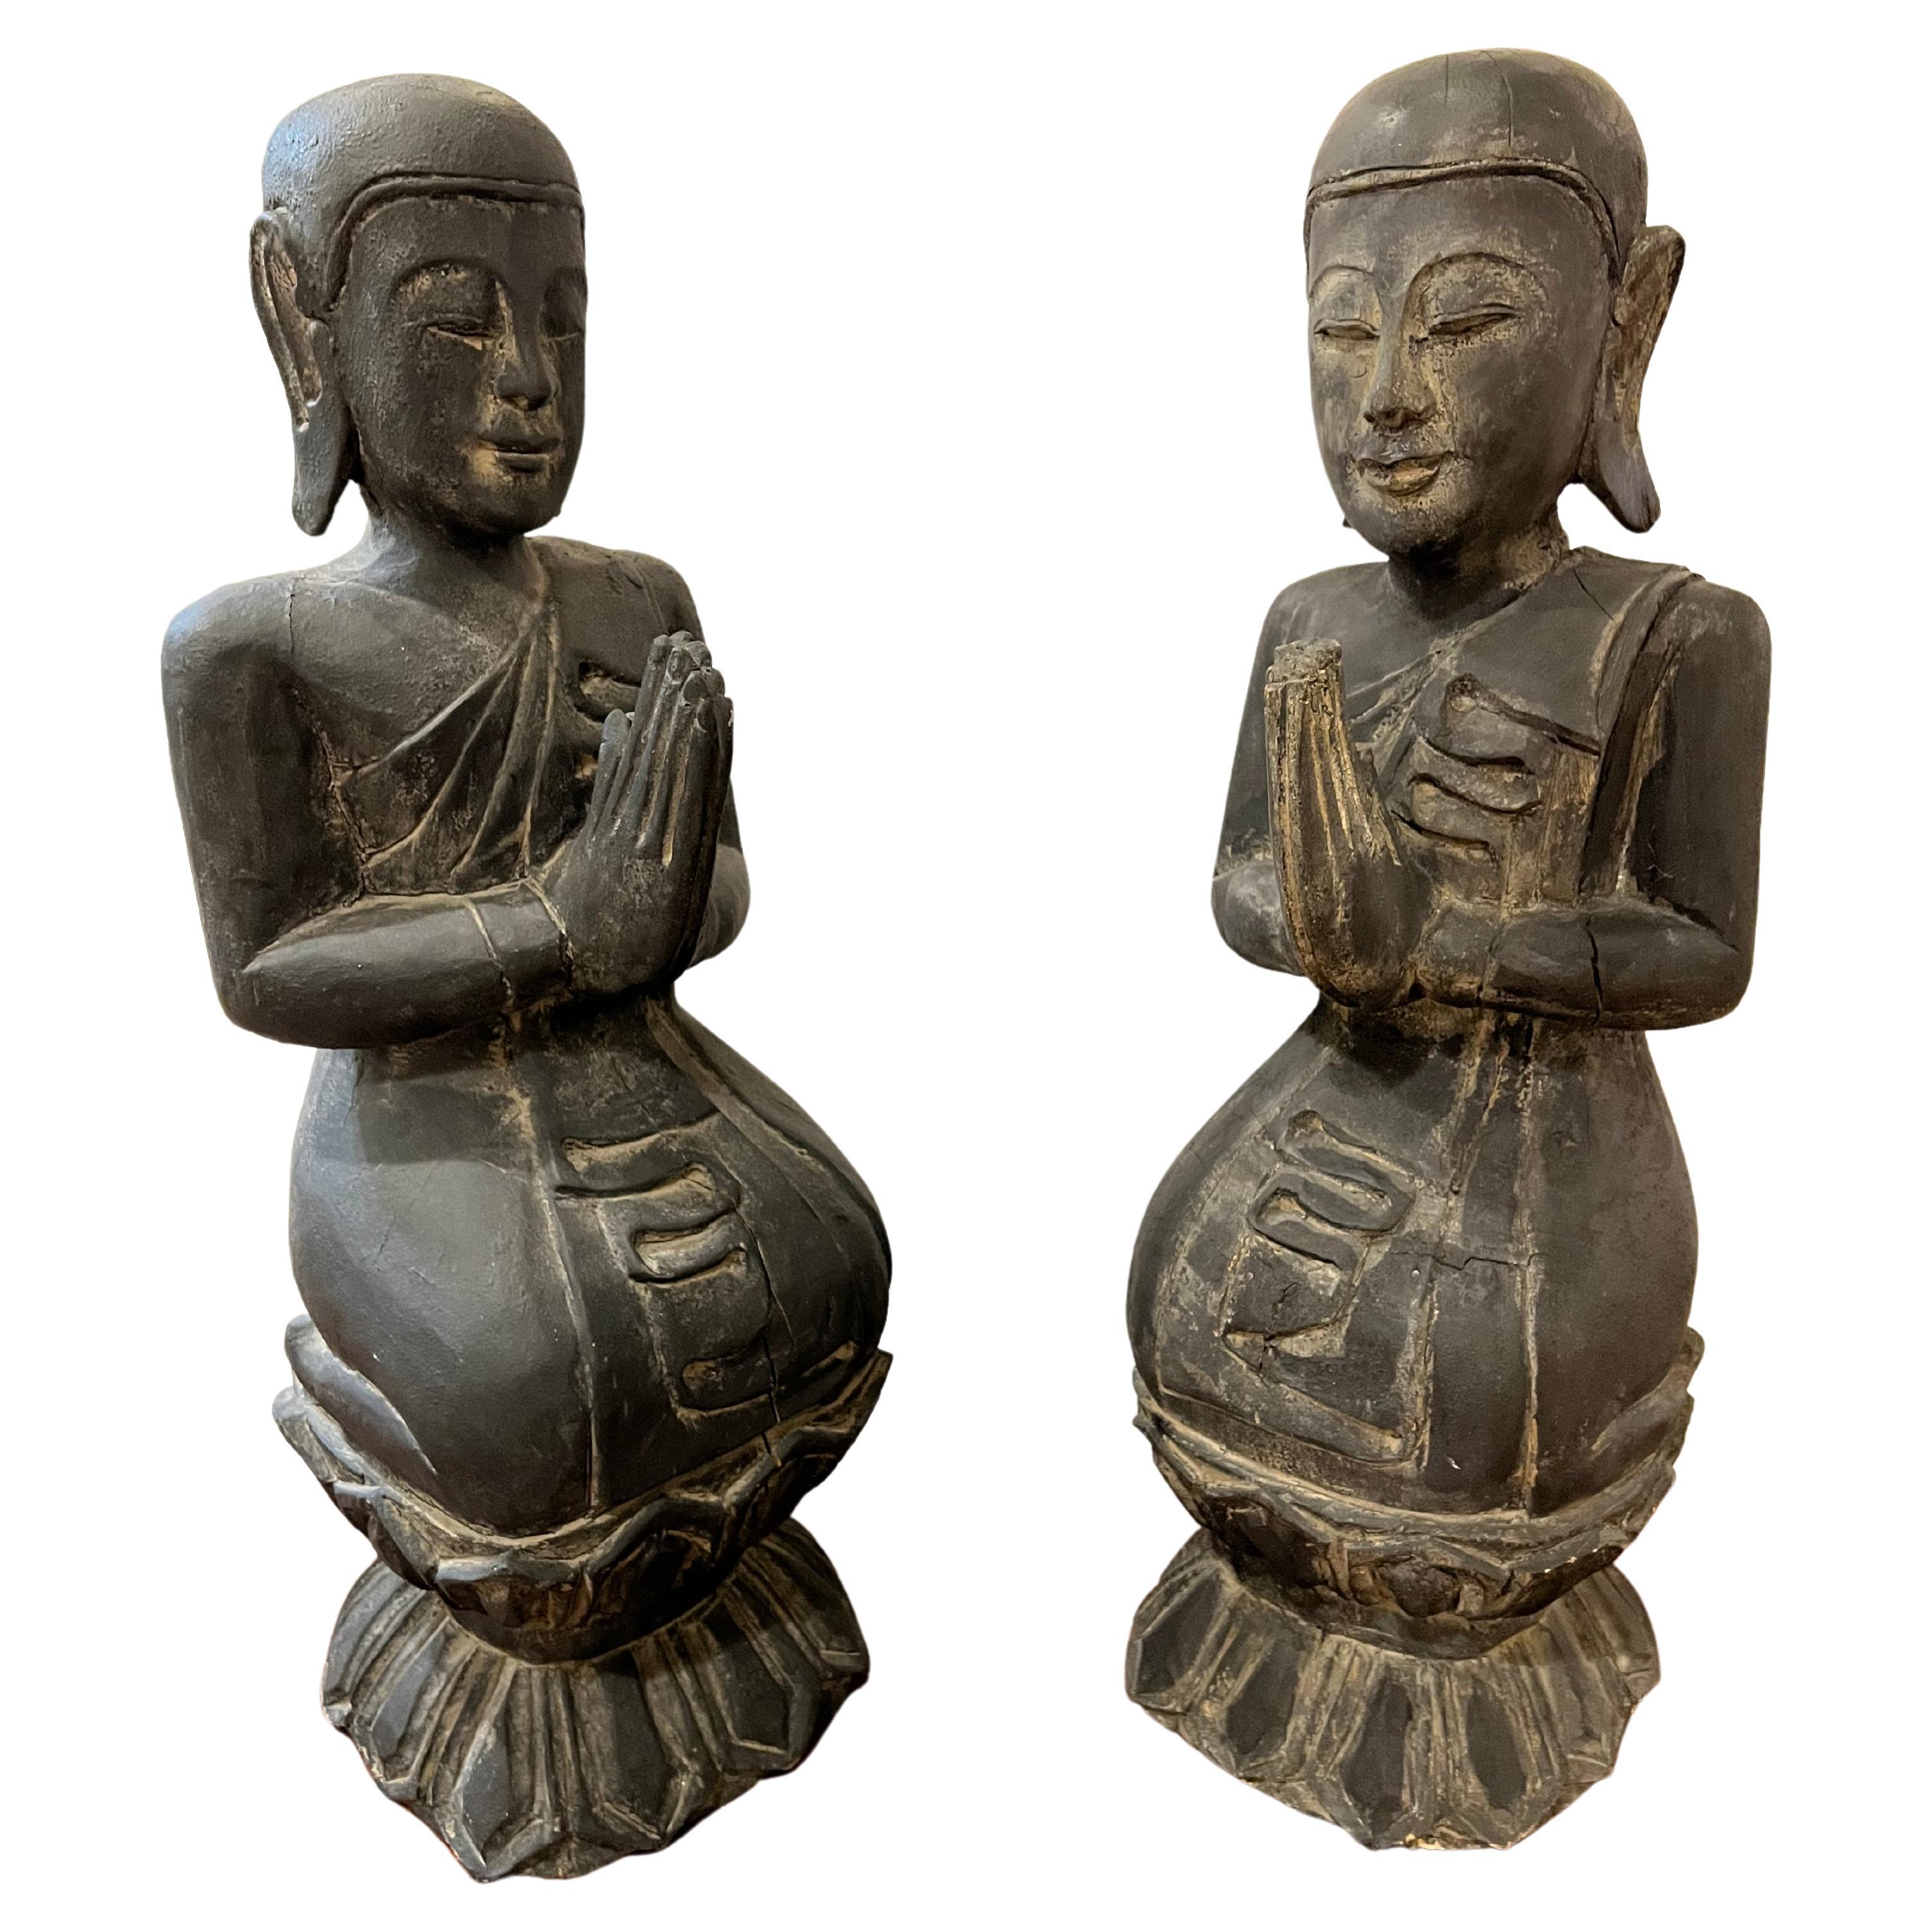 Pair of Wooden Buddha Sculptures